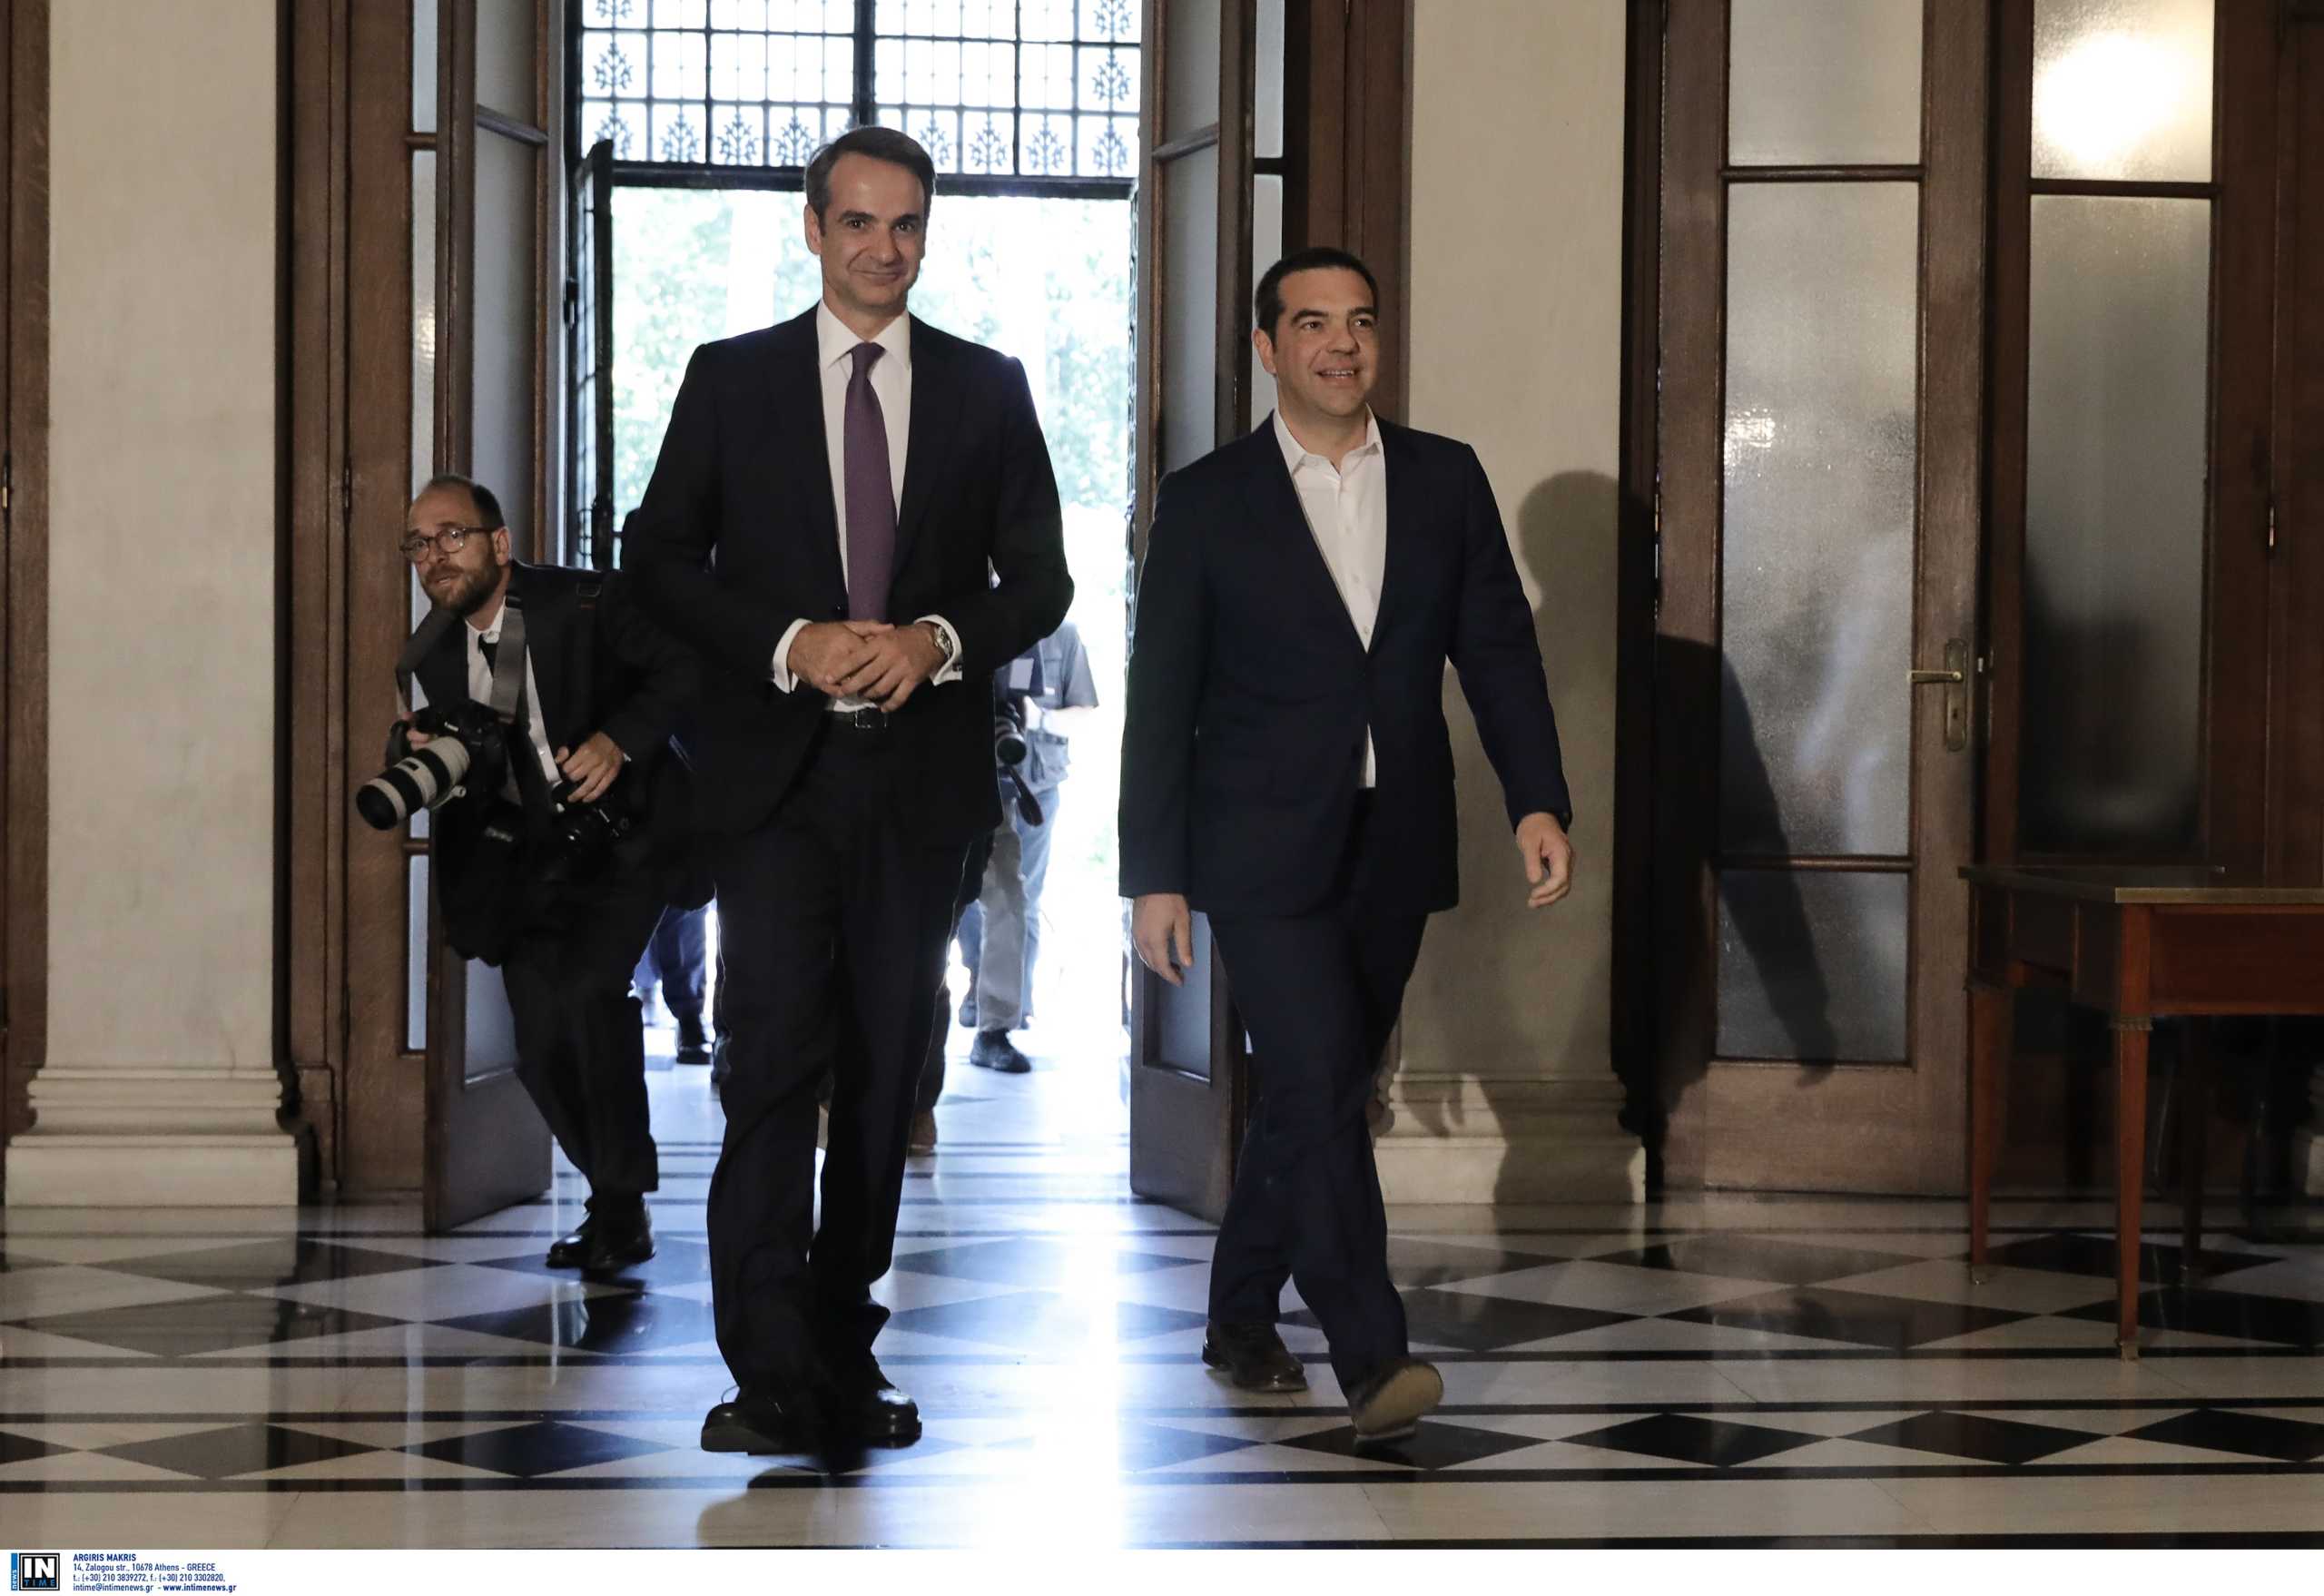 Δημοσκόπηση Prorata: Αυτοί είναι οι πιο δημοφιλείς πολιτικοί αρχηγοί, υπουργοί και στελέχη του ΣΥΡΙΖΑ